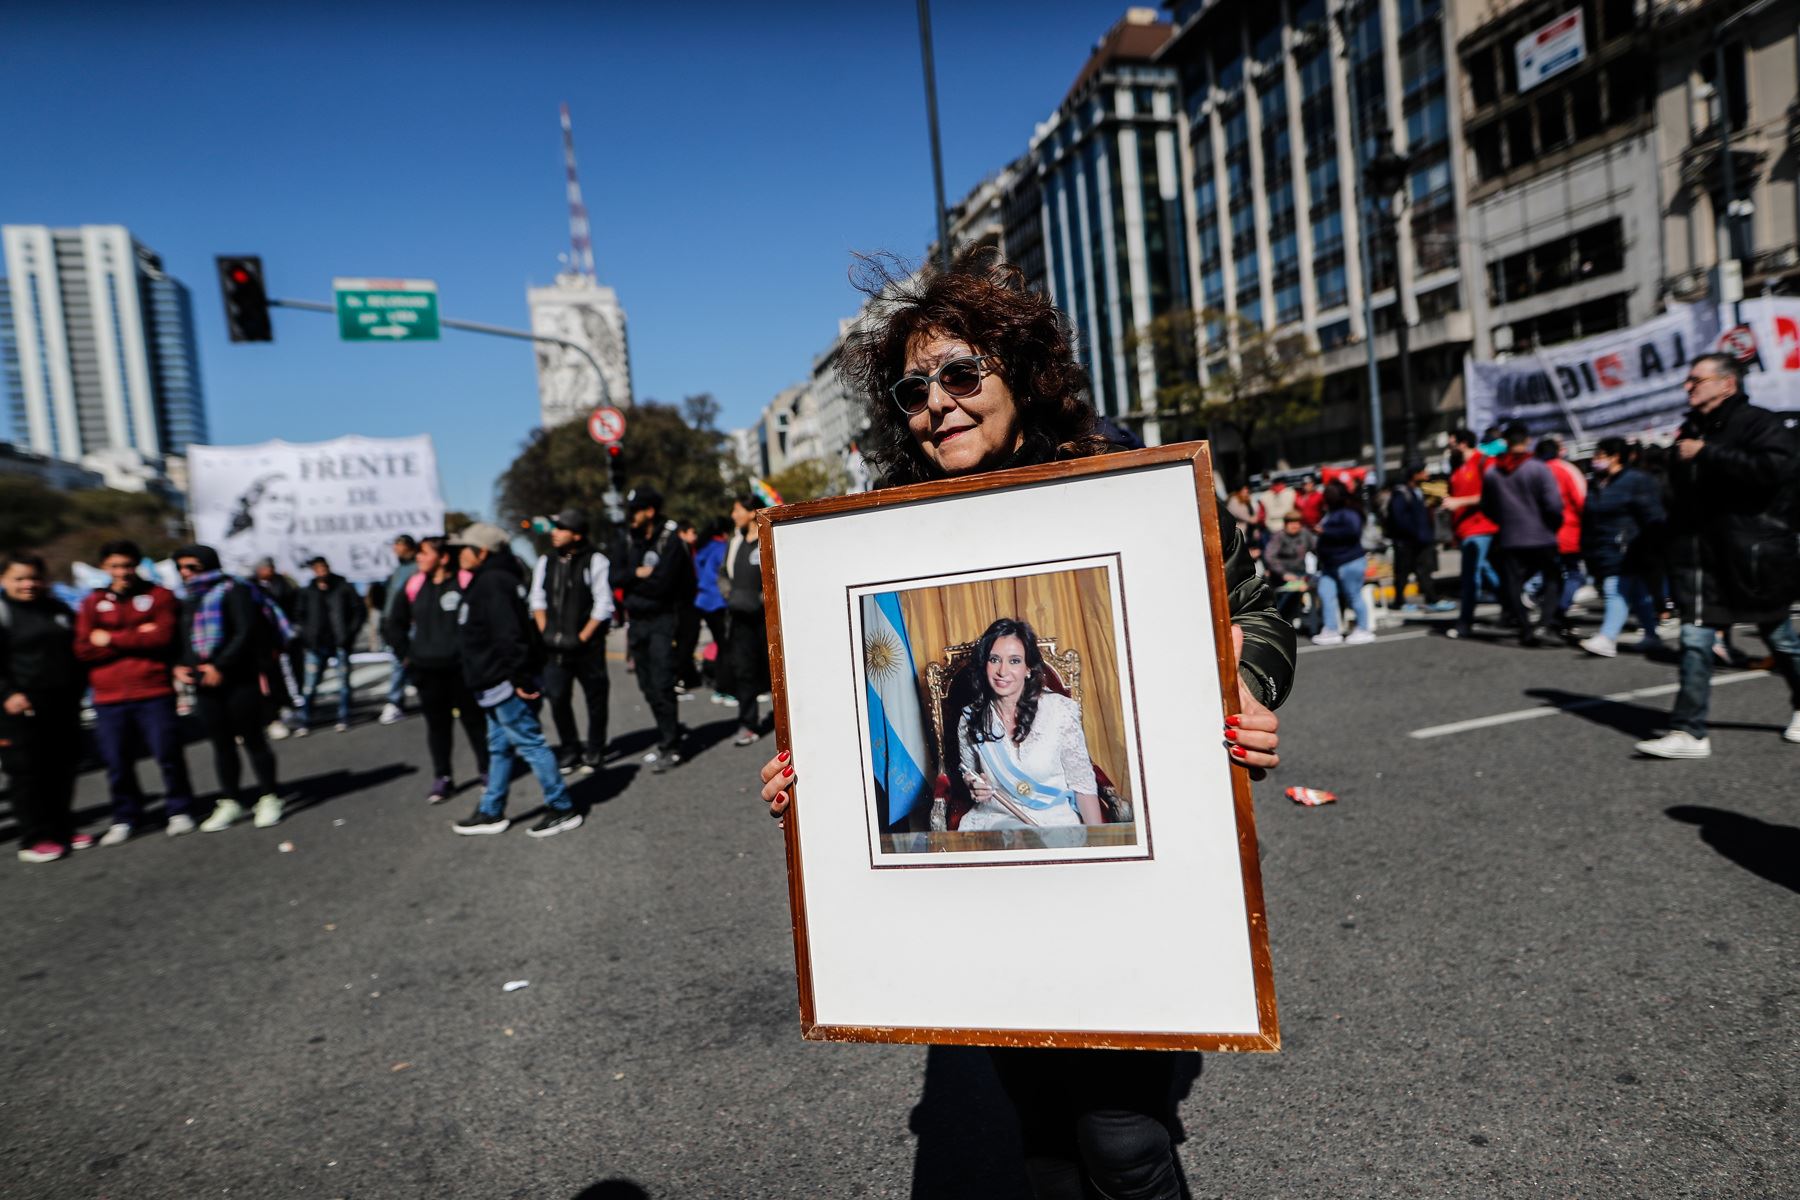 Miles de simpatizantes de Cristina Fernández de Kirchner participan hoy en una movilización en su defensa tras el atentado en su contra, en la Plaza de Mayo en Buenos Aires. Foto: EFE